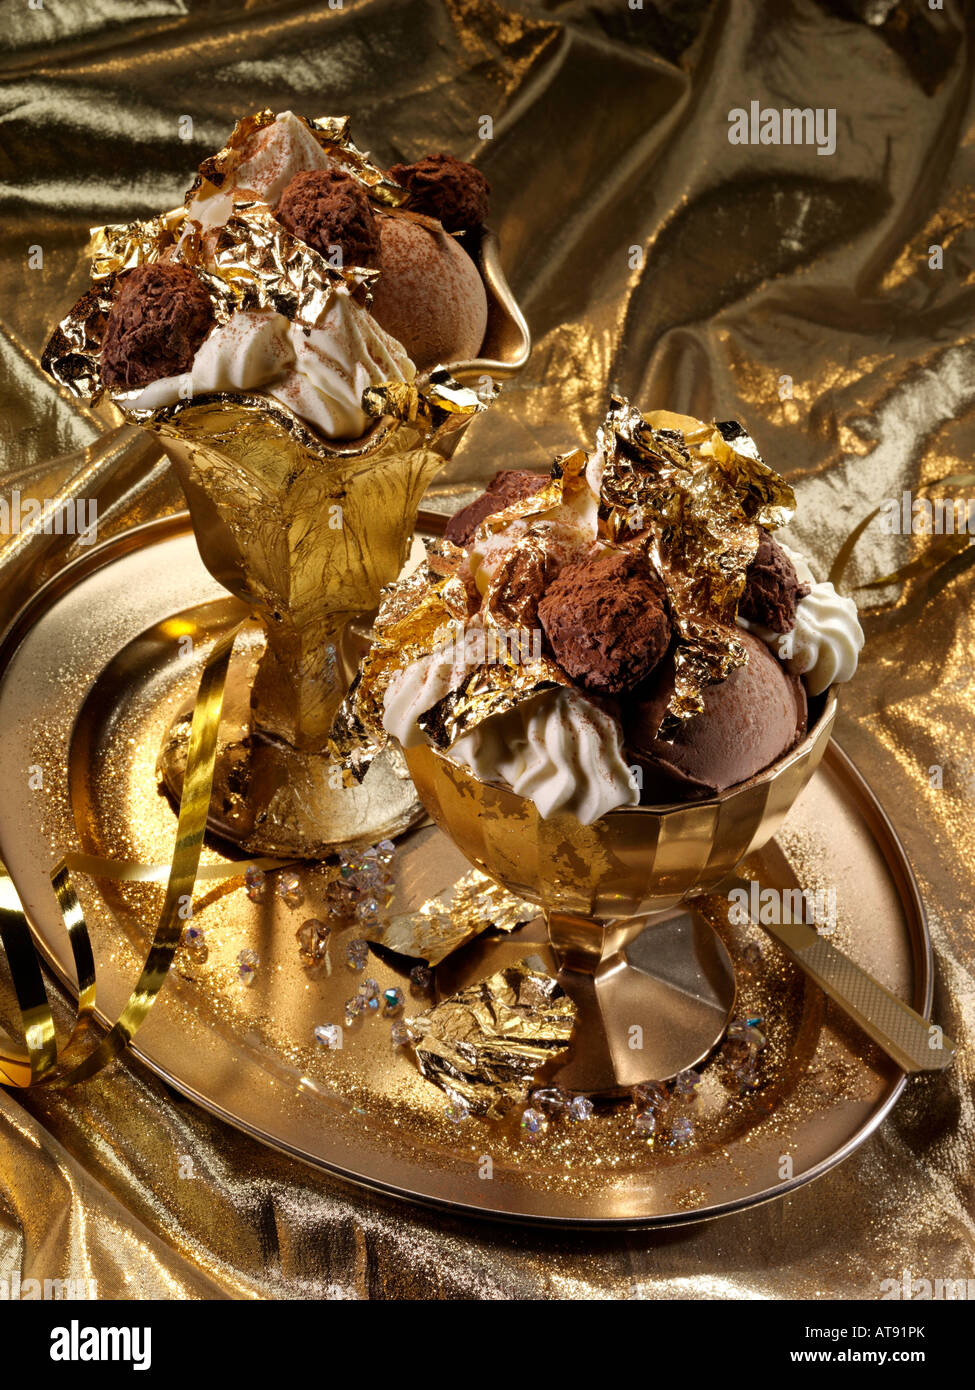 La feuille d'or extravagant truffes au chocolat et dessert glace alimentaire  rédaction Photo Stock - Alamy